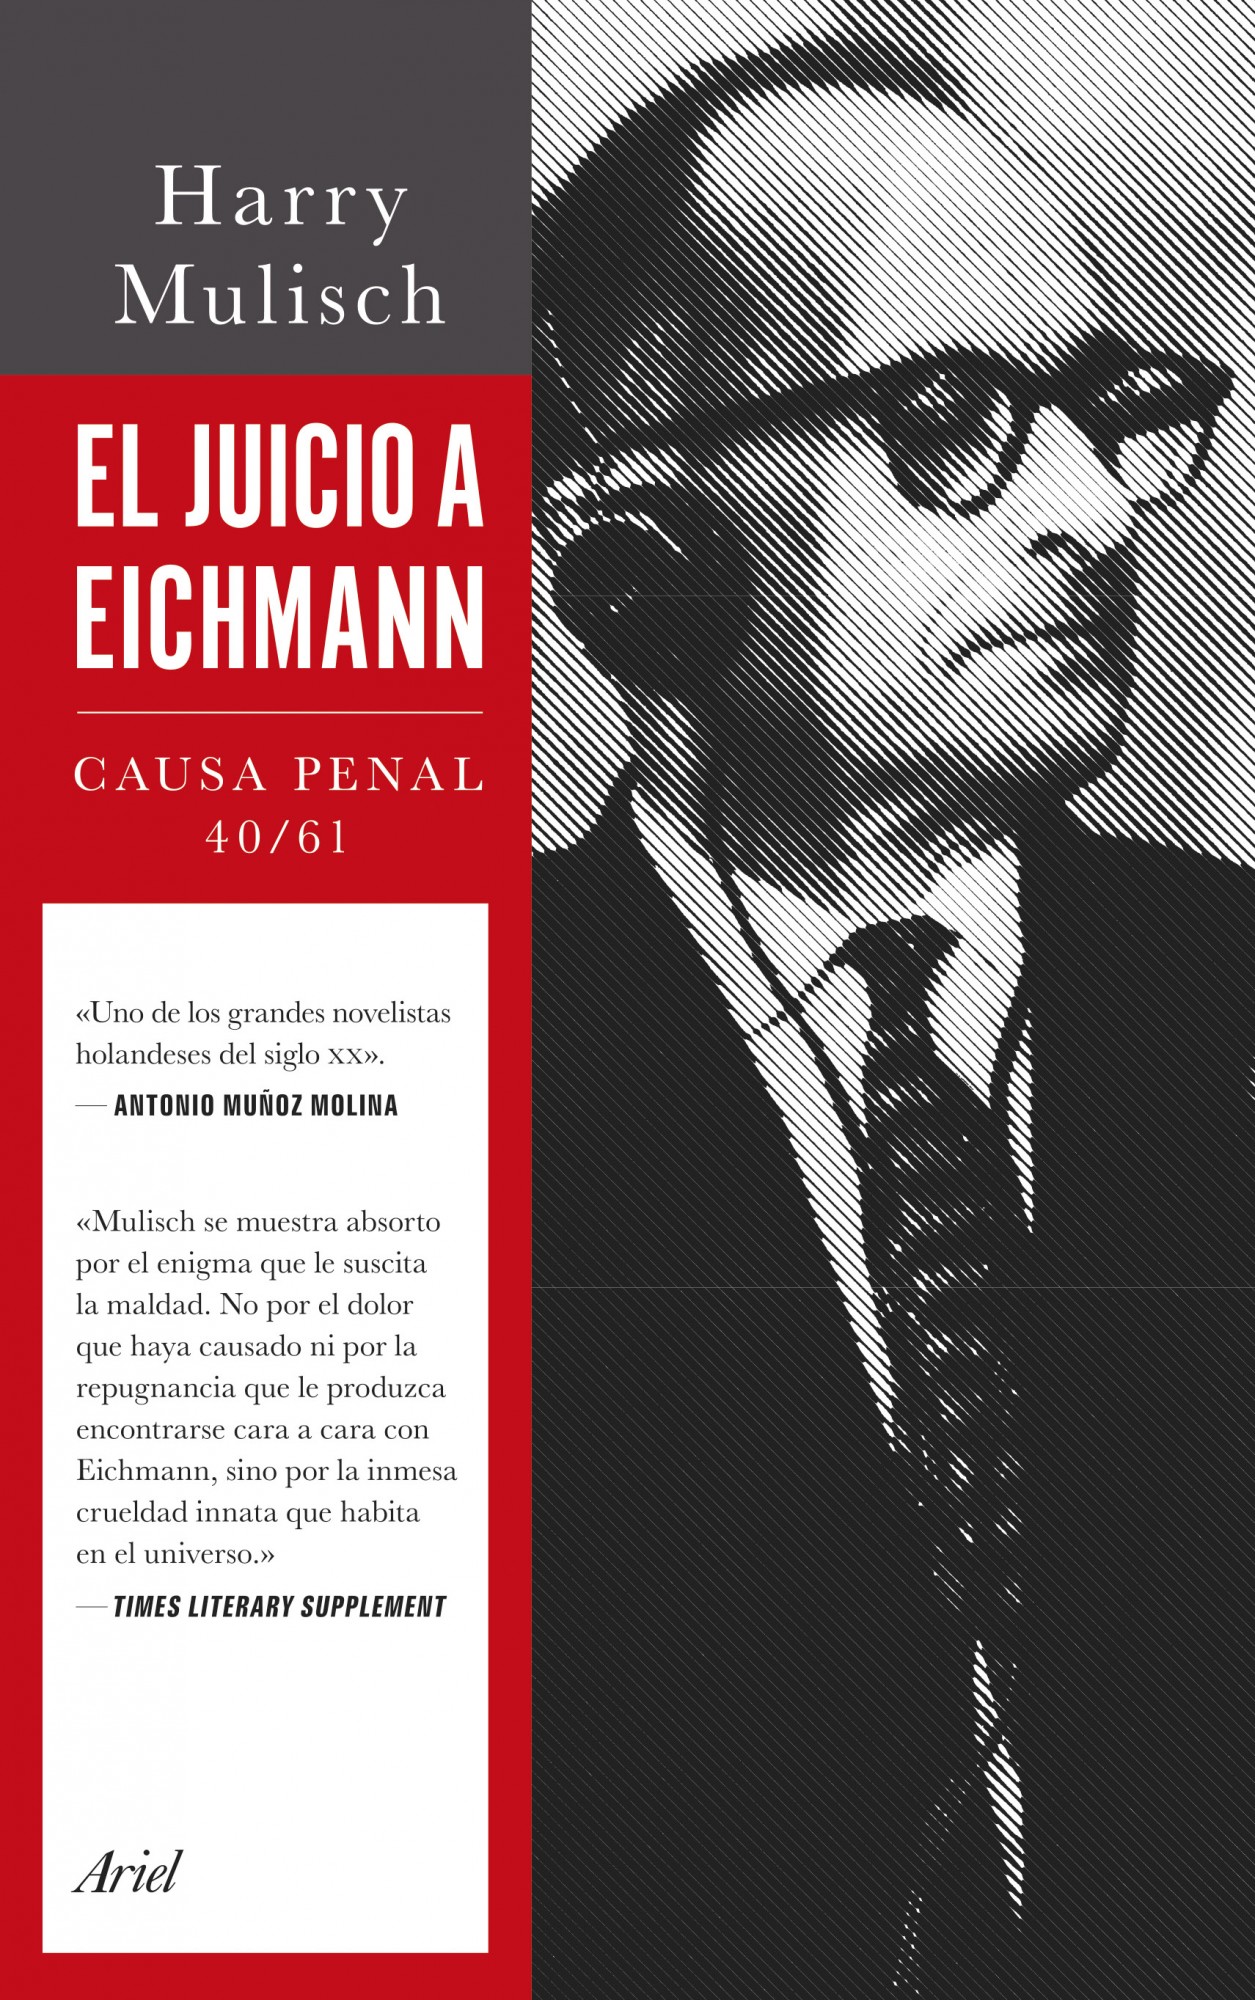 Juicio de Eichman, El "Causa Penal 40/61"